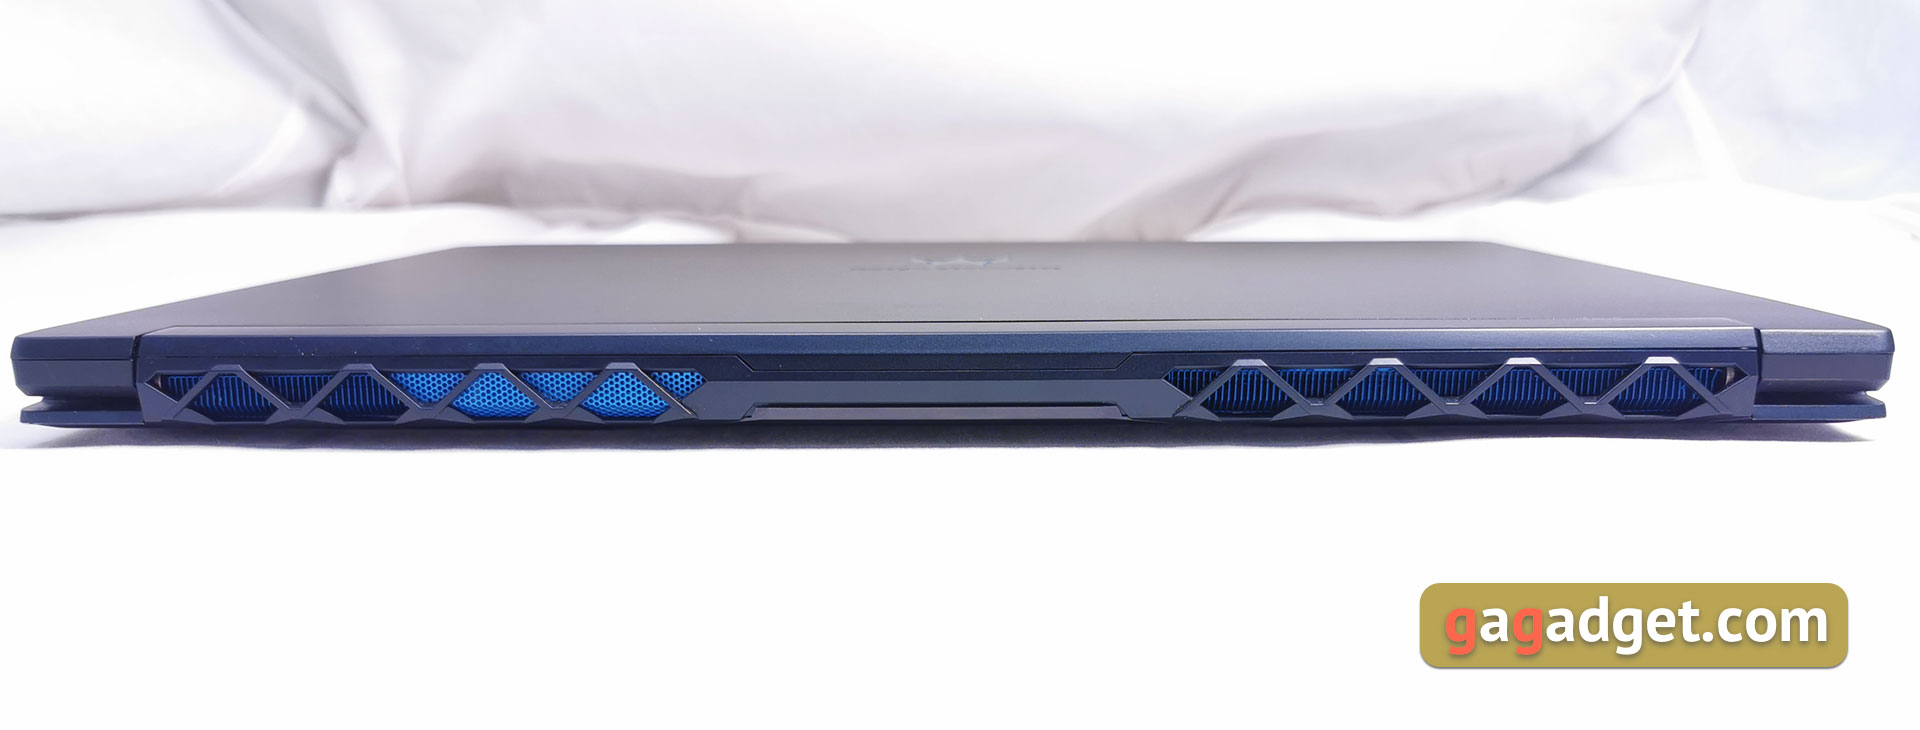 Recenzja Acer Predator Triton 500: laptop do gier z RTX 2080 Max-Q w zwartej, lekkiej obudowie-9